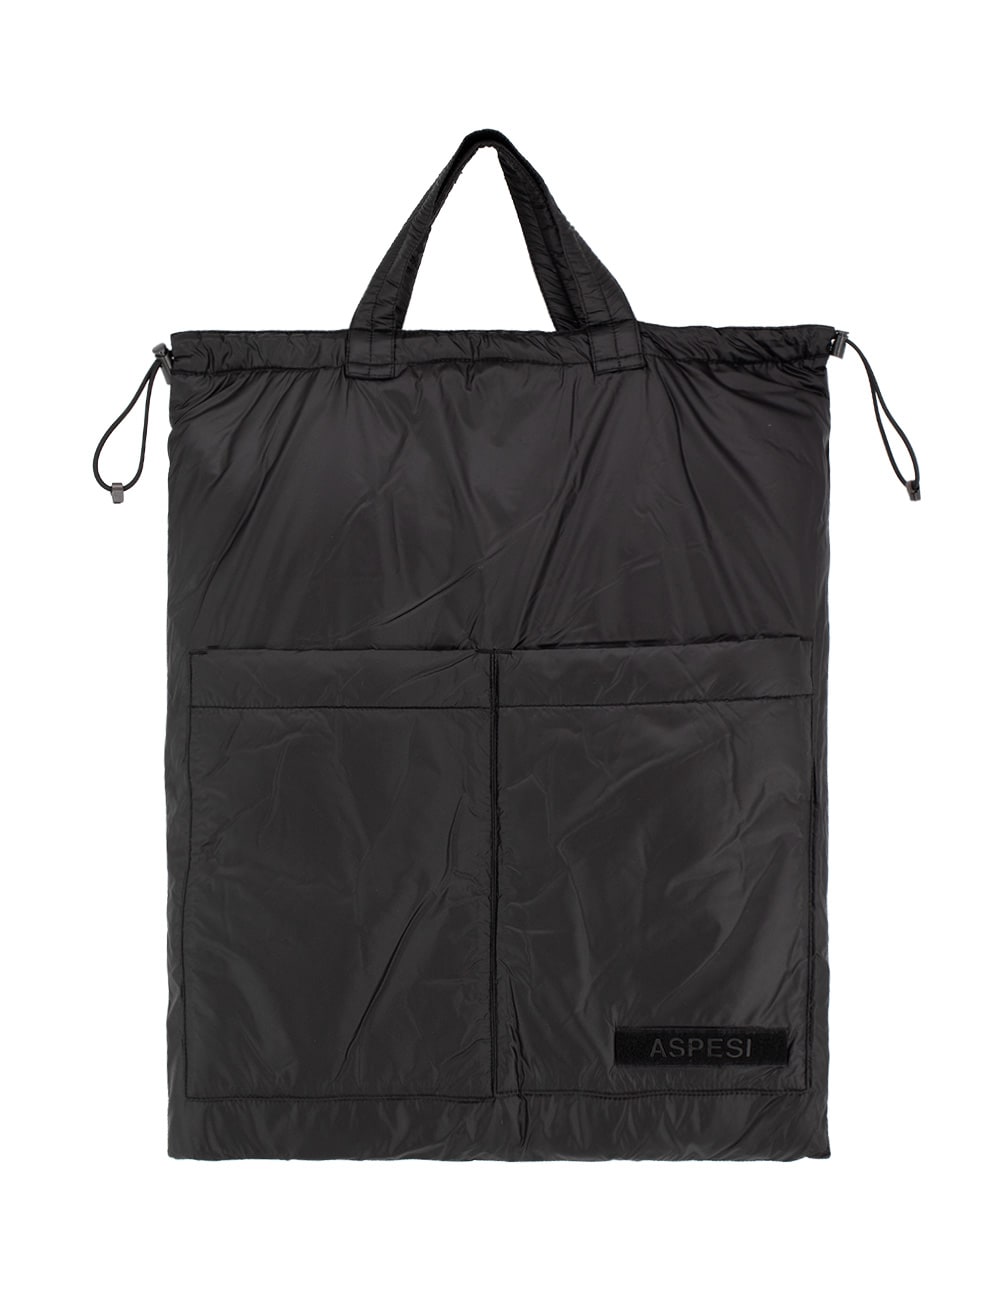 Aspesi Bag In Black